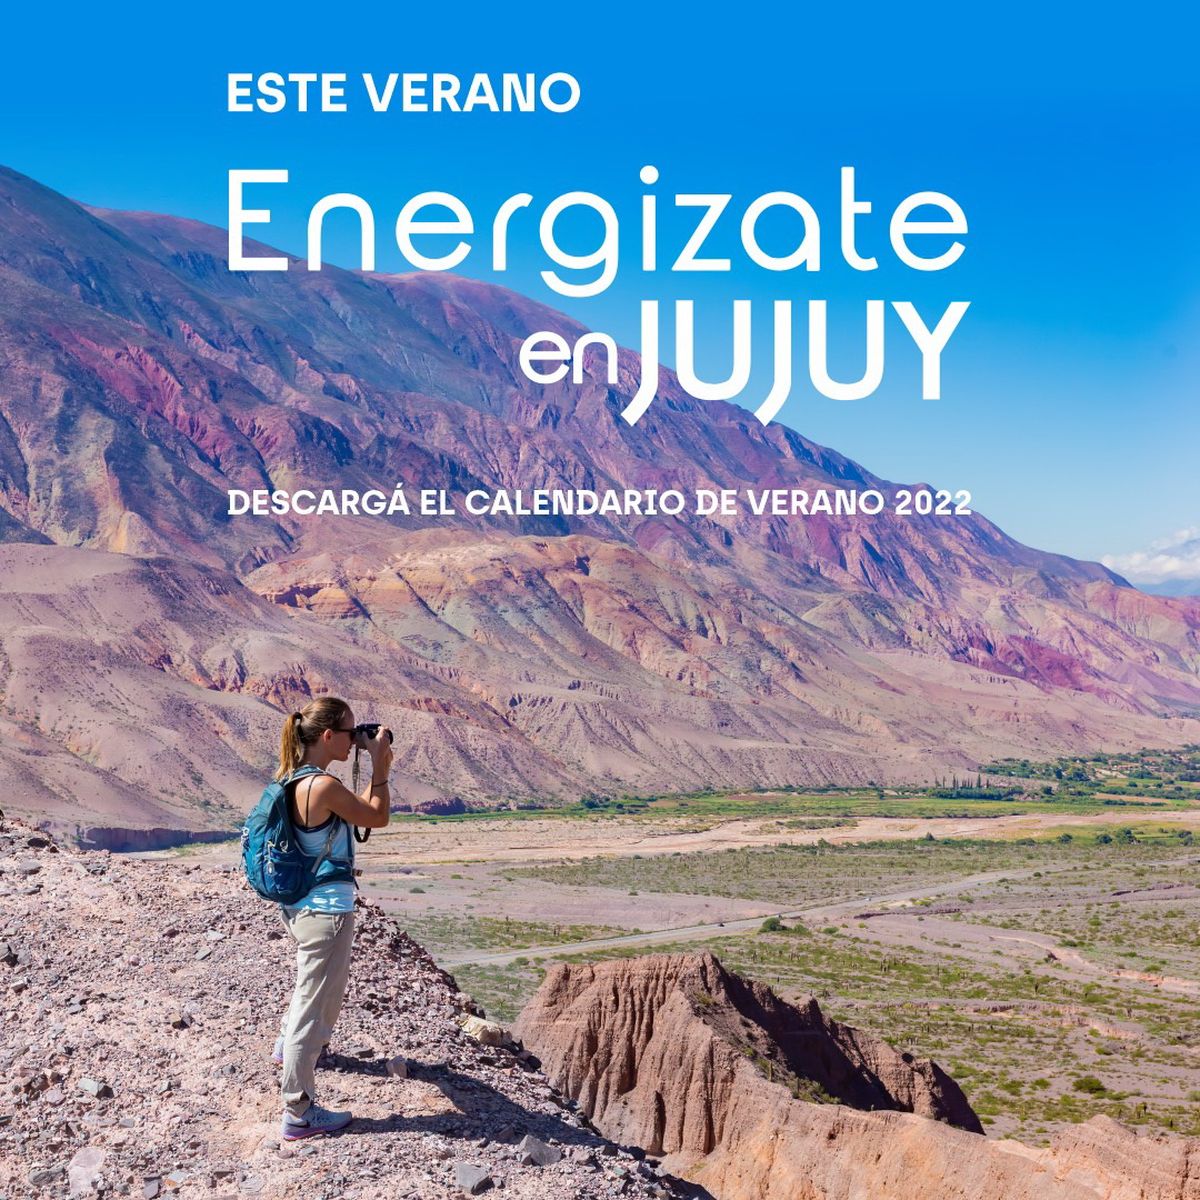 Consultá y descargá el Calendario turístico y cultural de verano en Jujuy